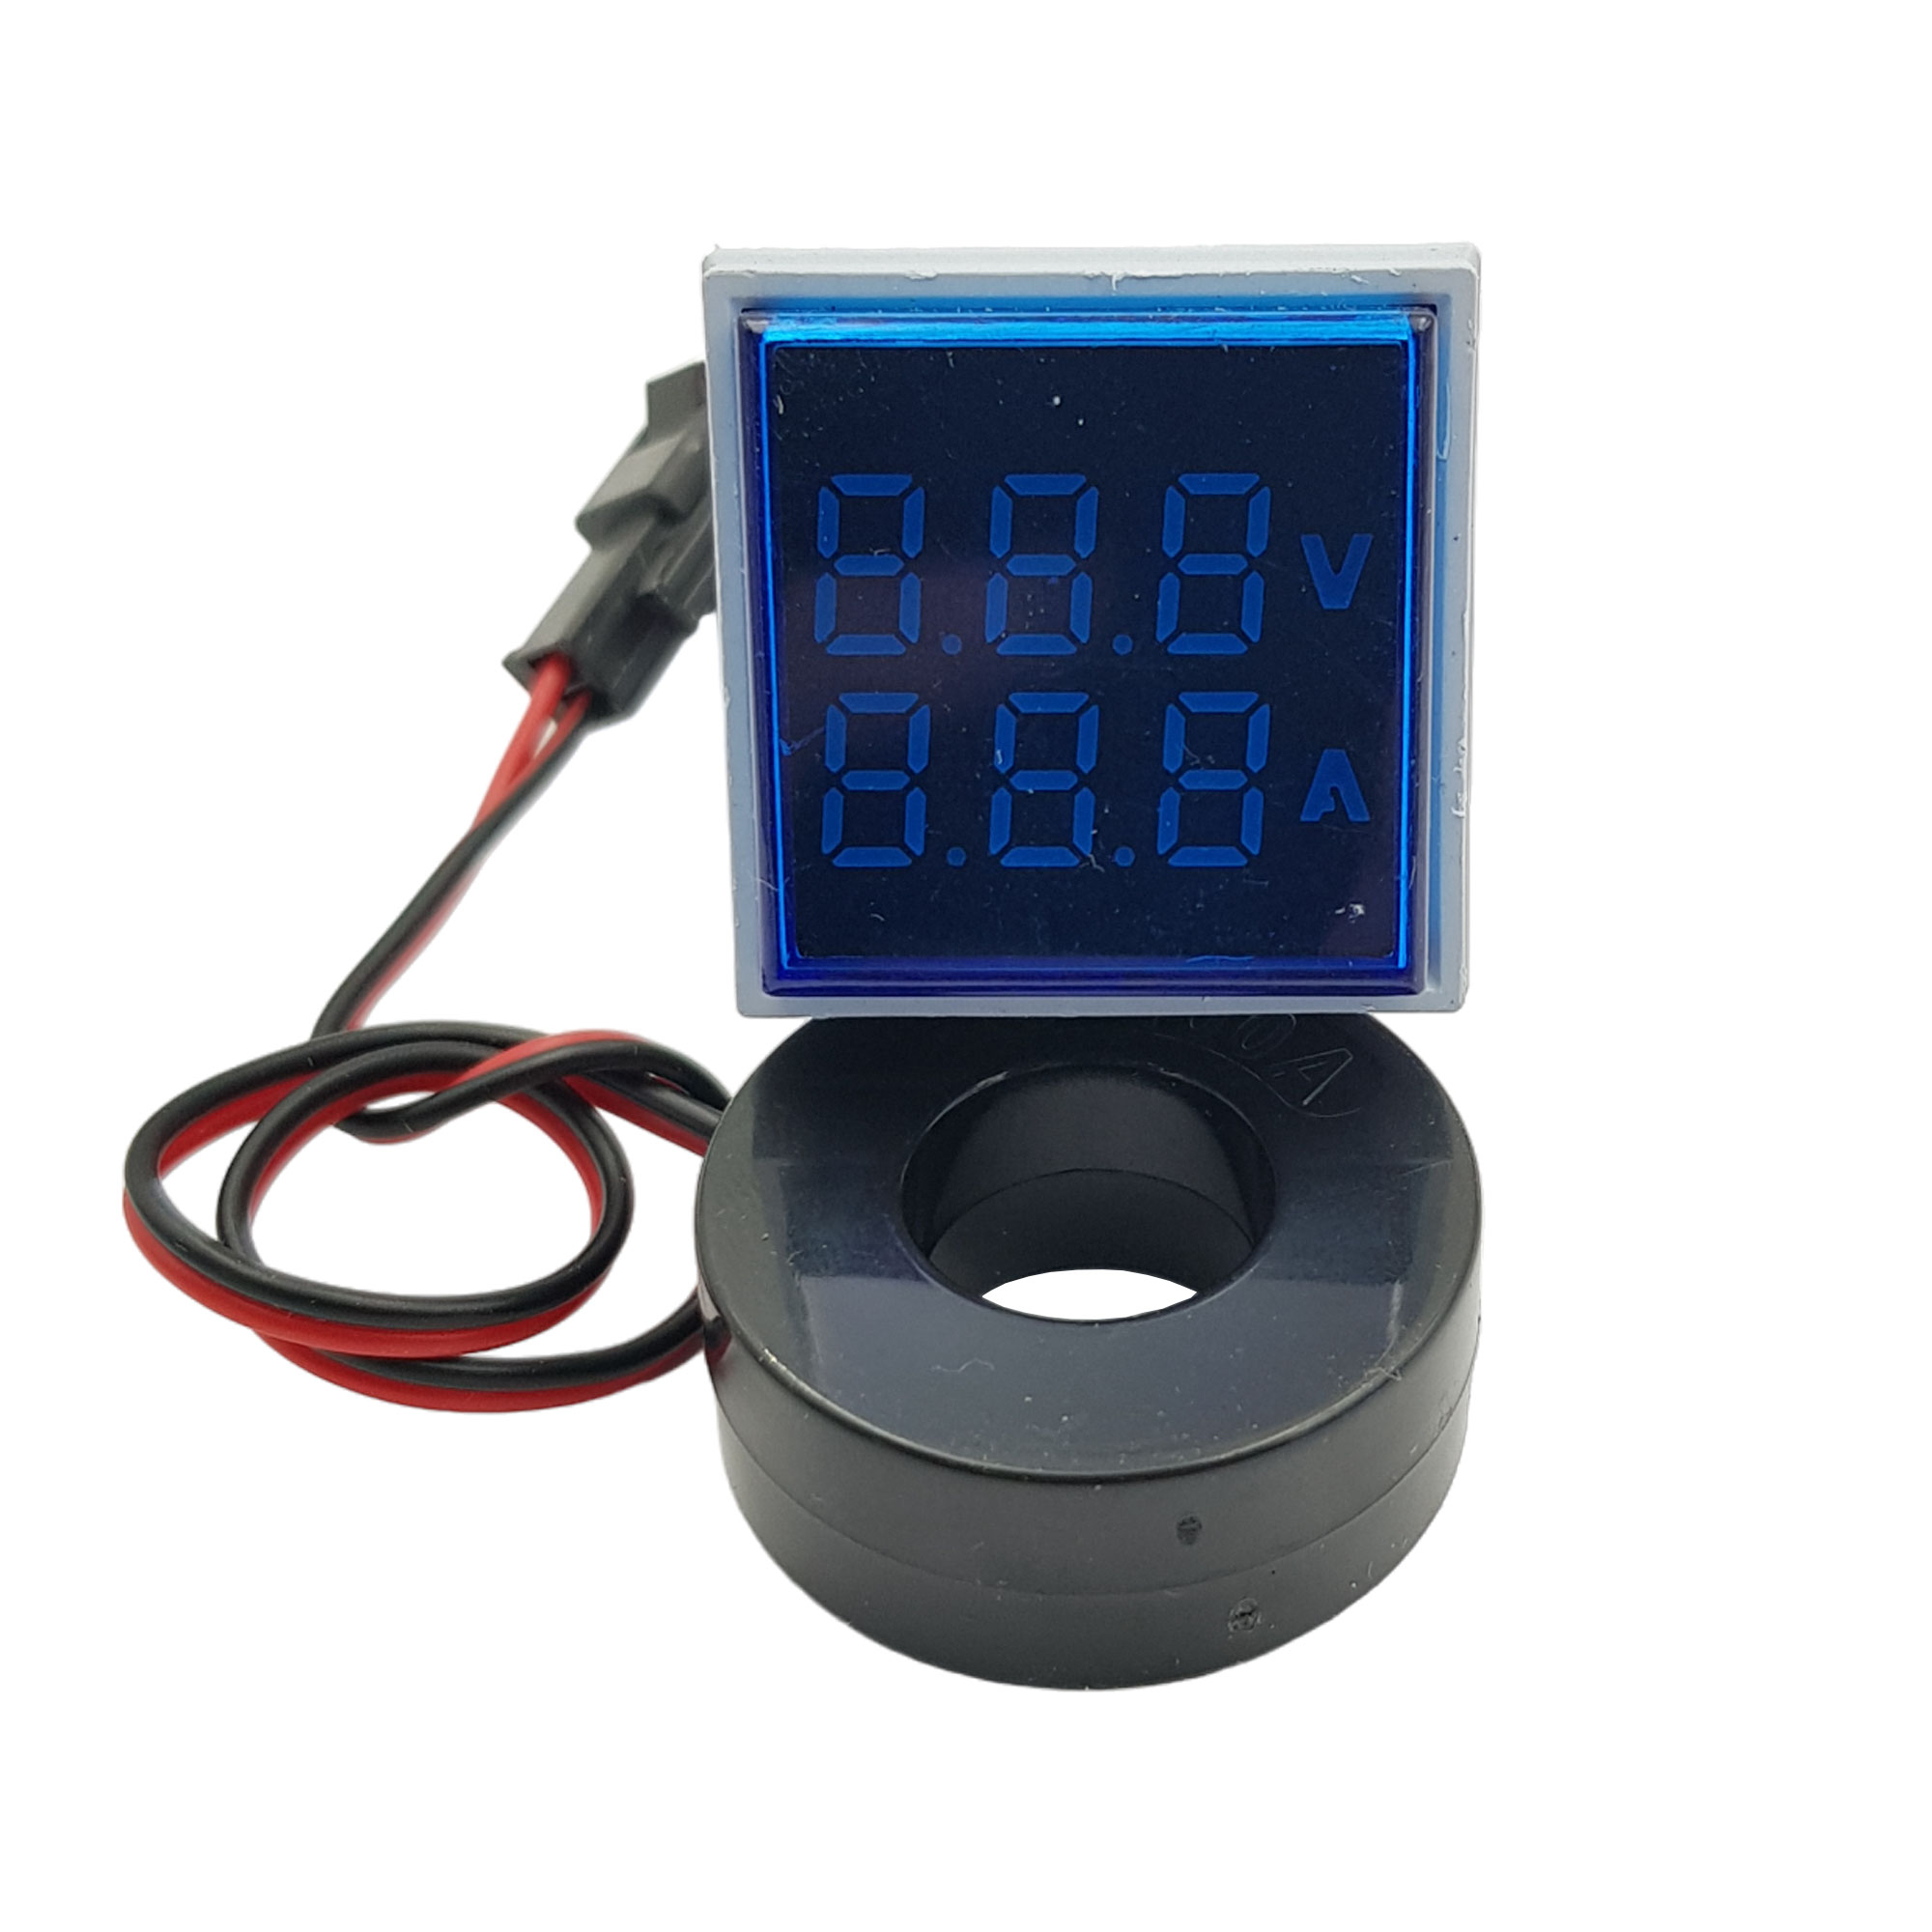 Hình ảnh đồng hồ đo dòng điện, điện áp 50-500VAC